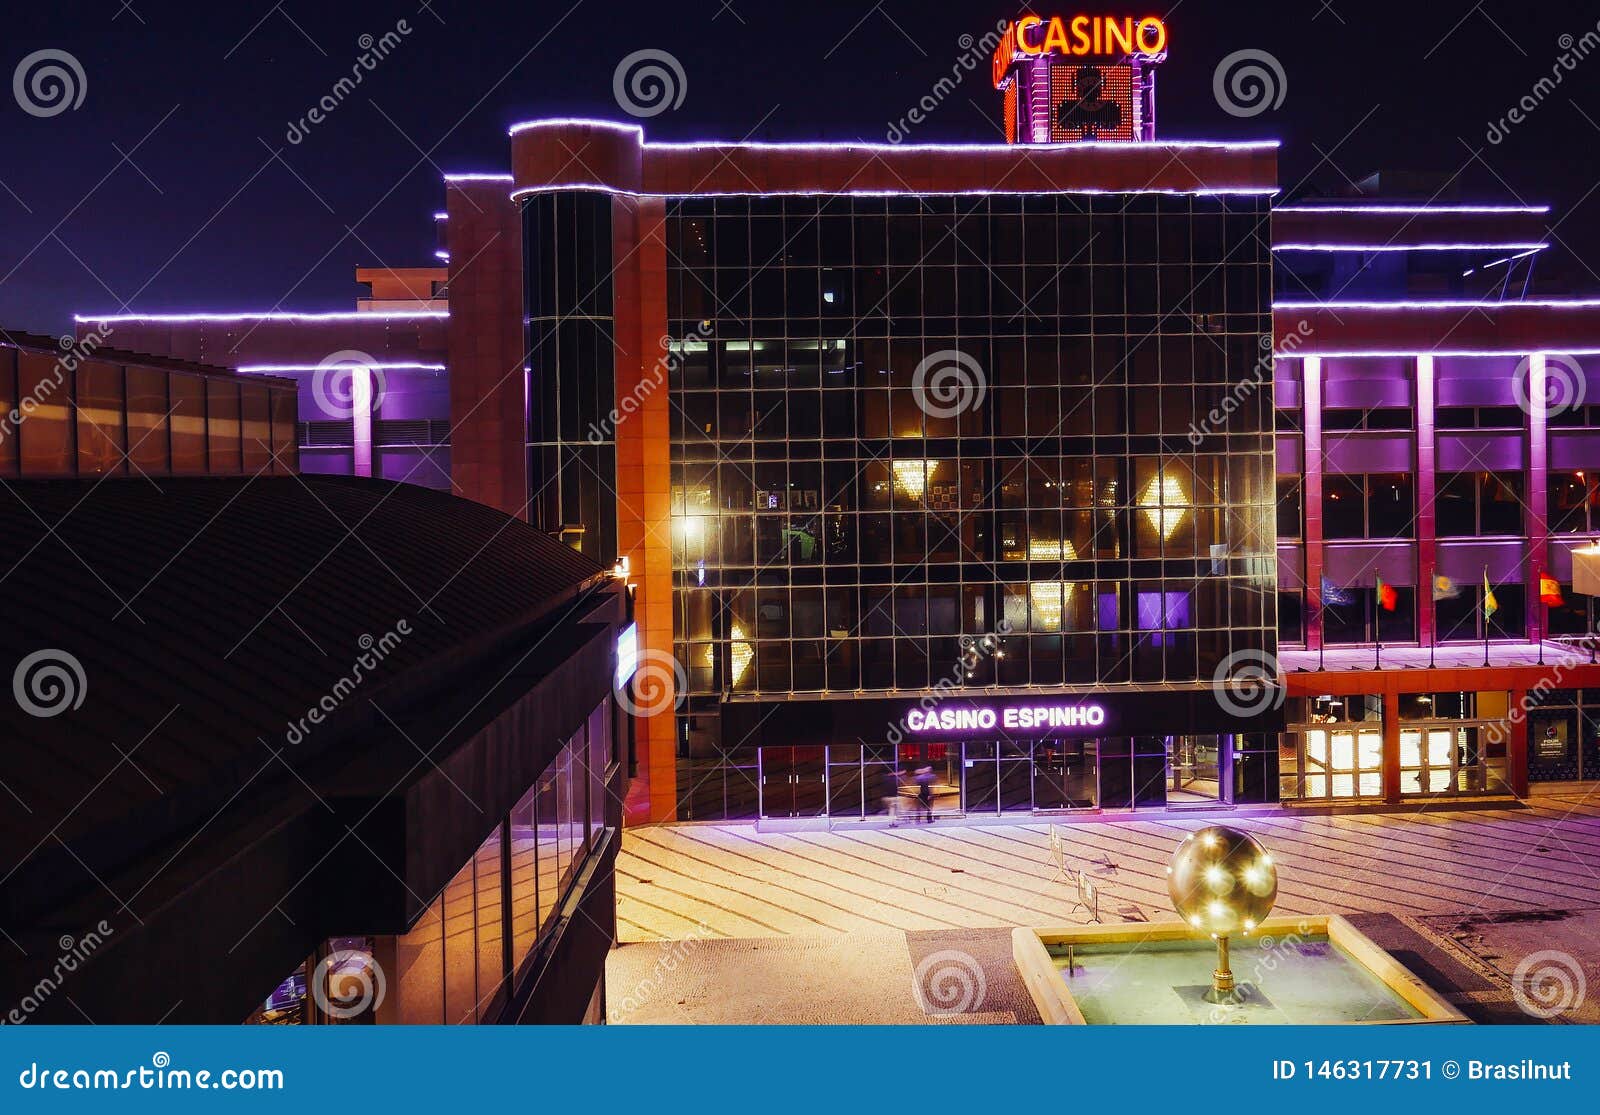 Blog descreve uma observação importante em artigos sobre Casinos